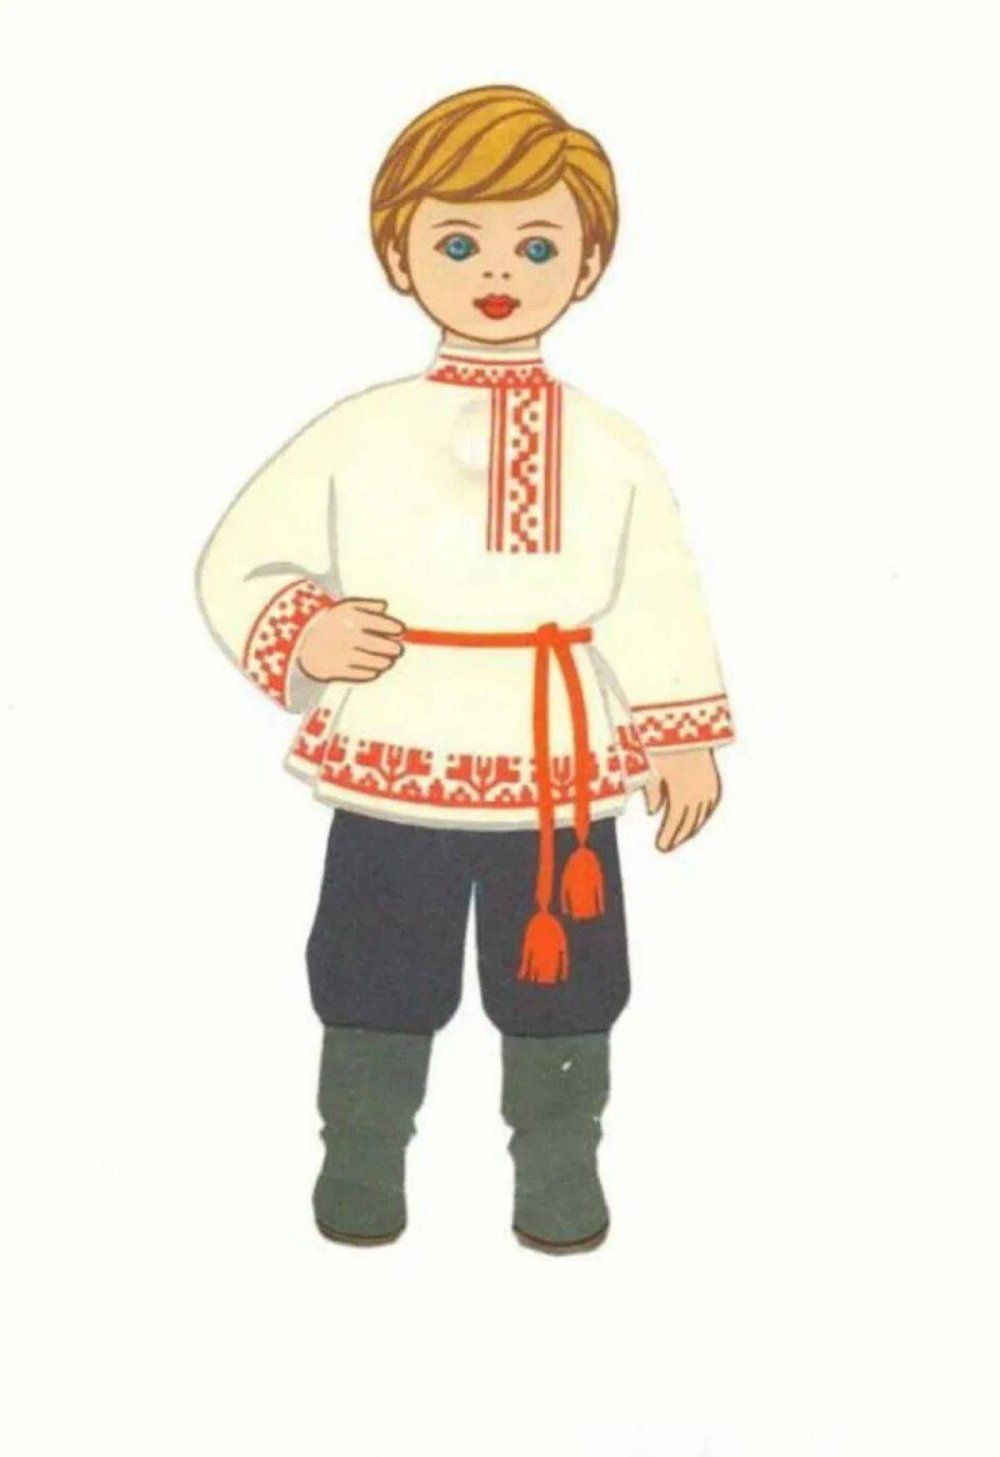 Мальчик в русском народном костюме рисунок